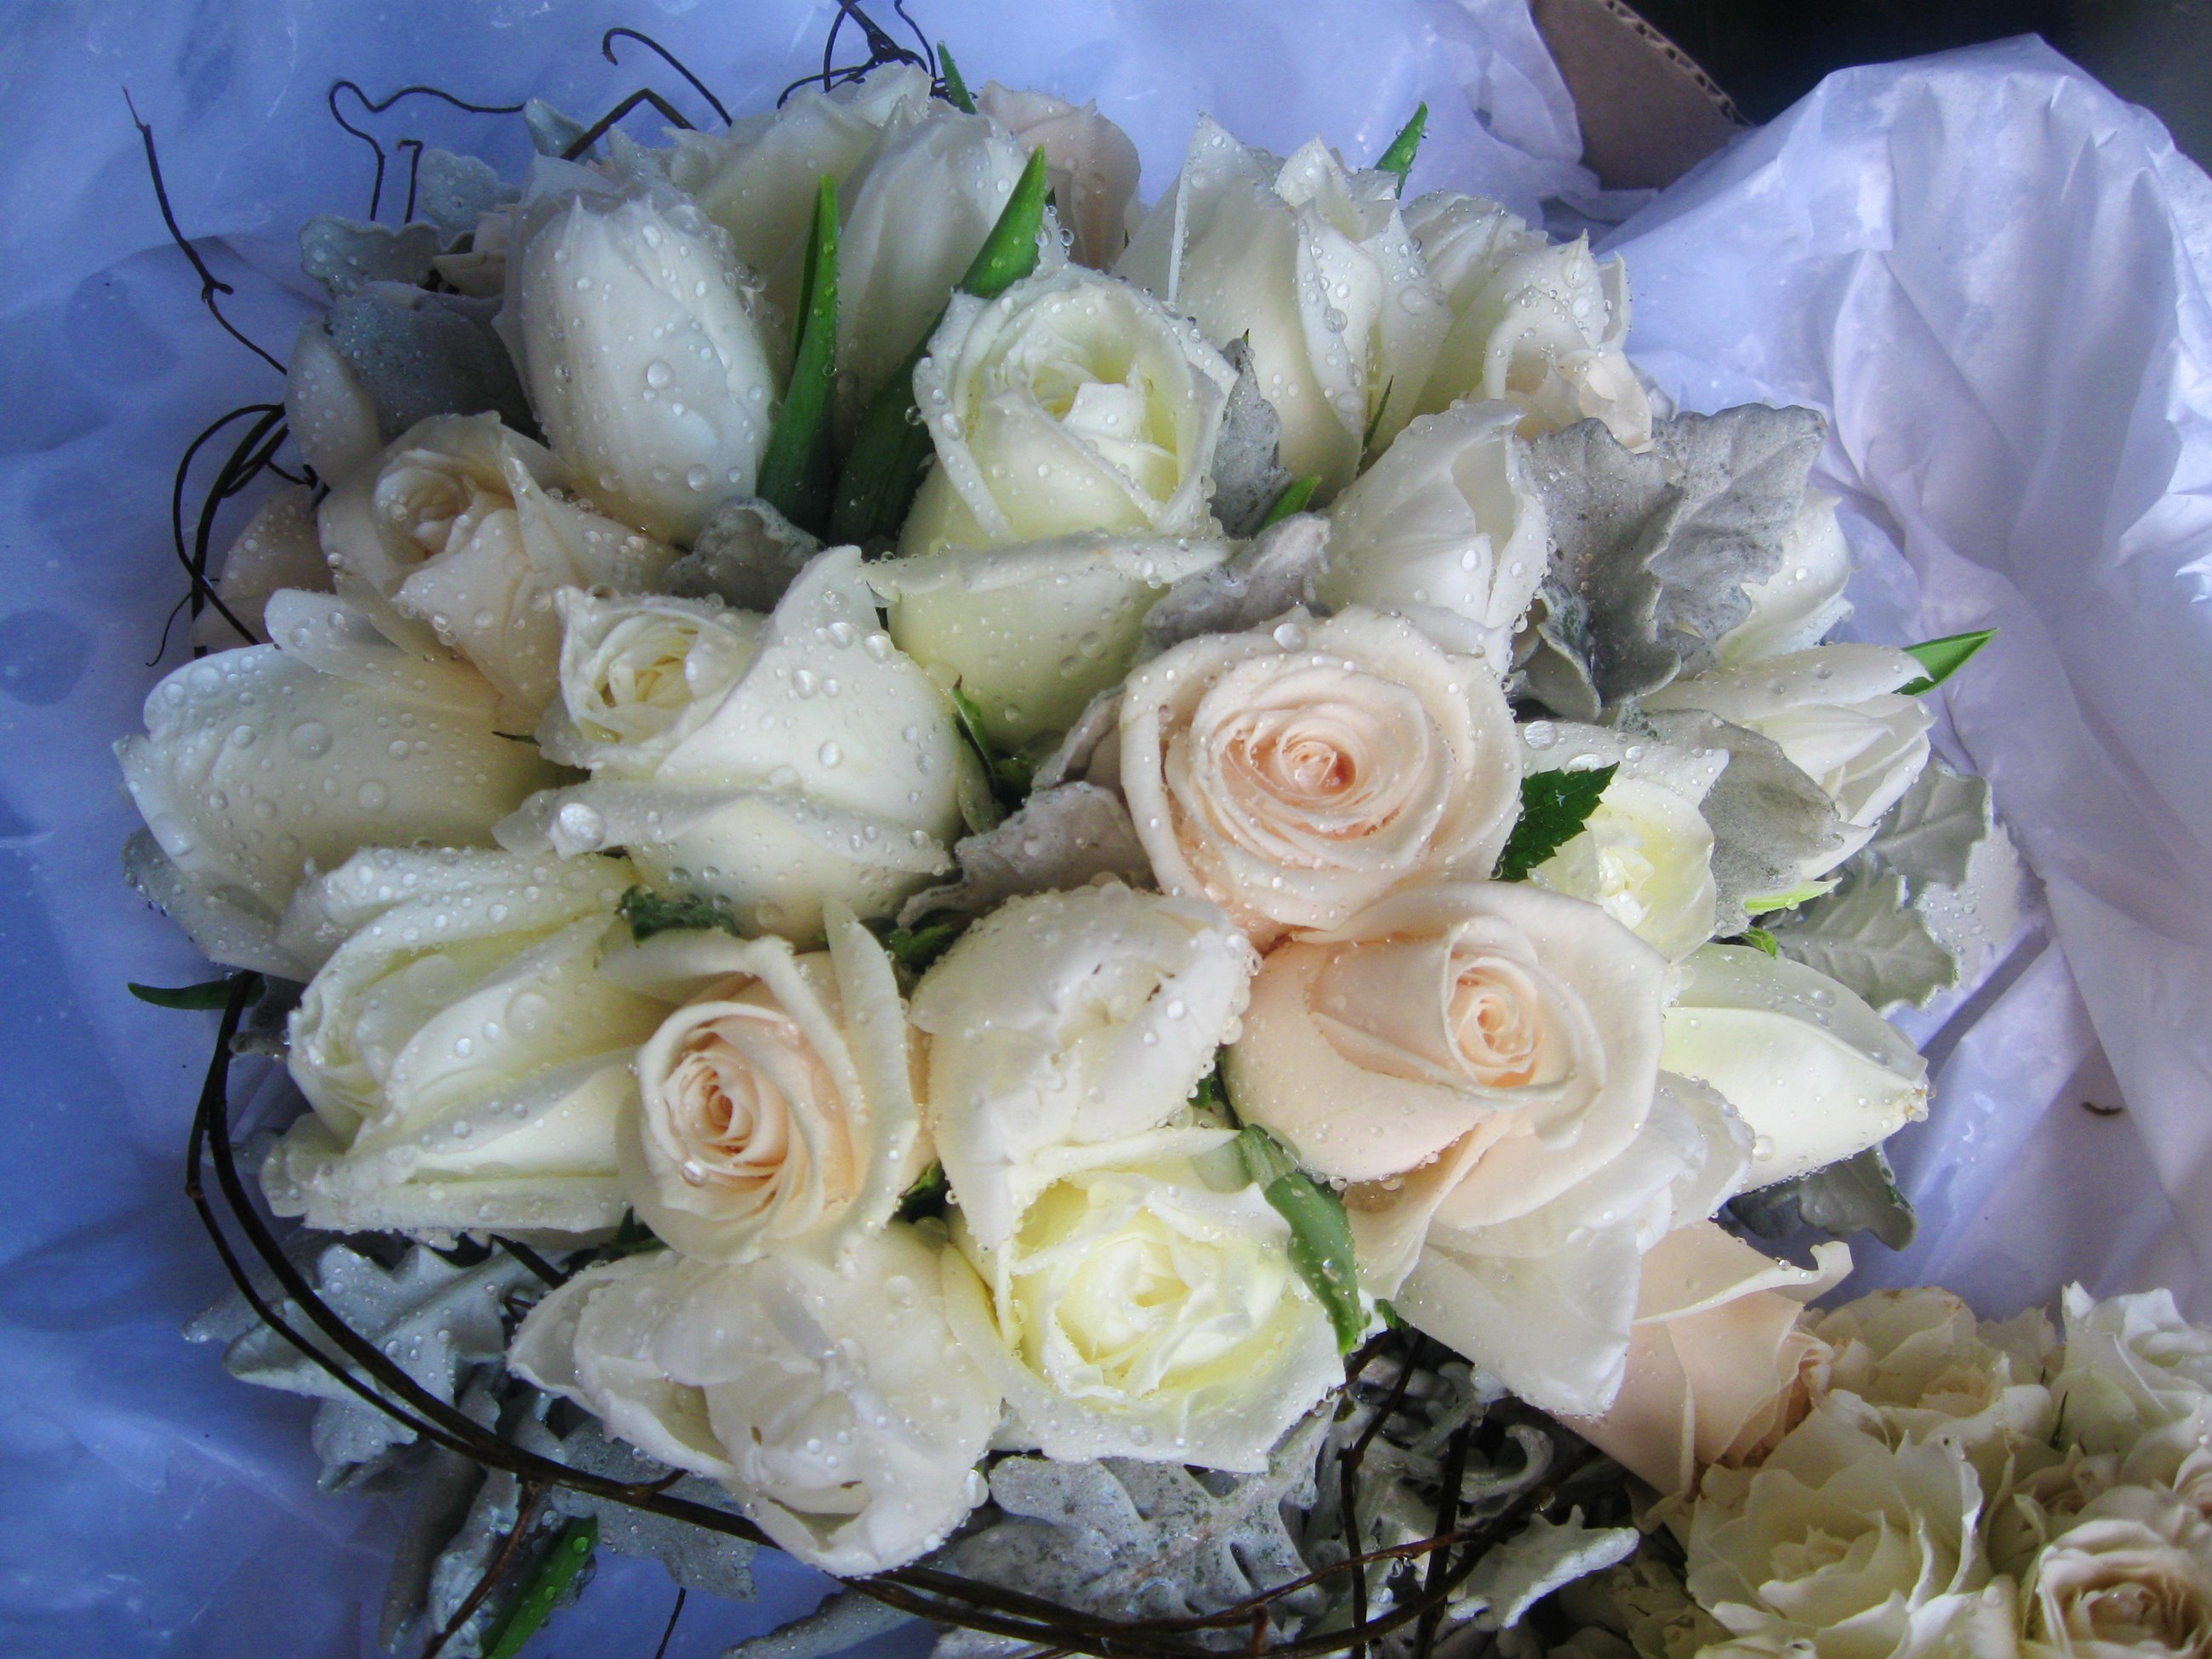 Букет белых роз с днем рождения